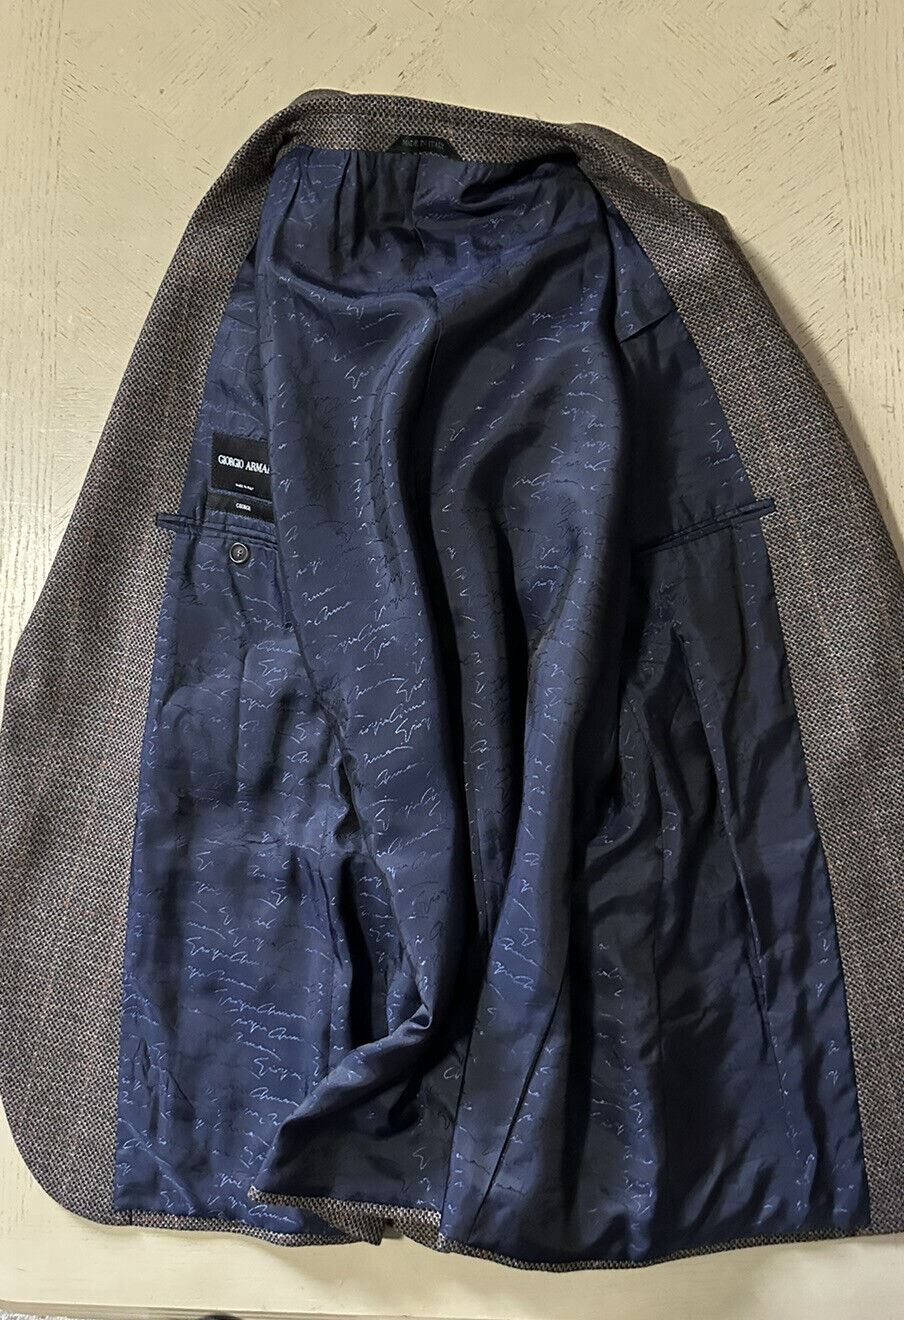 СЗТ 2695 долларов США Giorgio Armani Мужская спортивная куртка в клетку Блейзер Коричневый/Мю. 42 США/52 Е